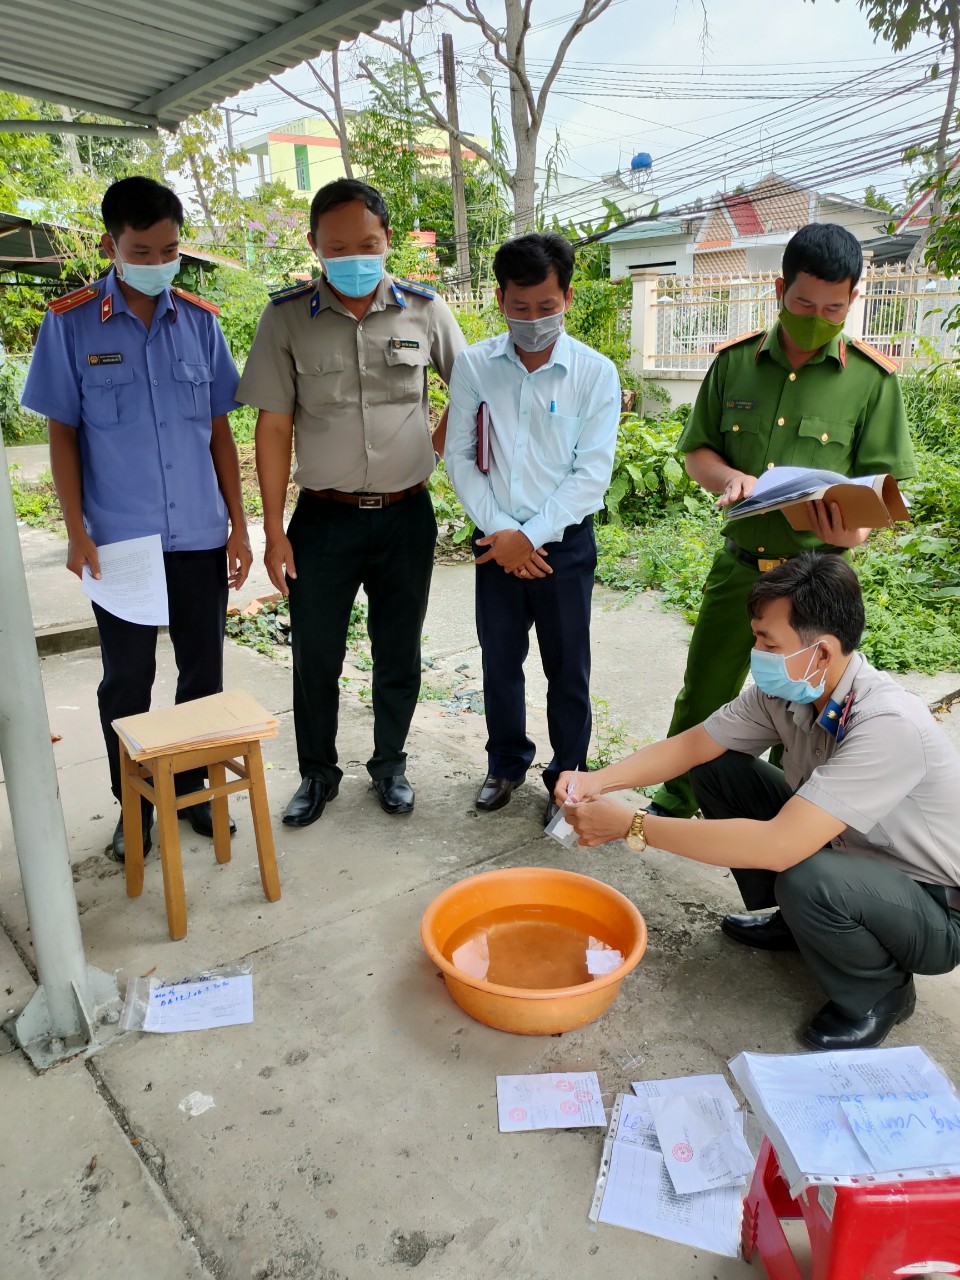 Chi cục Thi hành án dân sự huyện Cao Lãnh, tỉnh Đồng Tháp tổ chức tiêu hủy vật chứng trong các vụ án hình sự